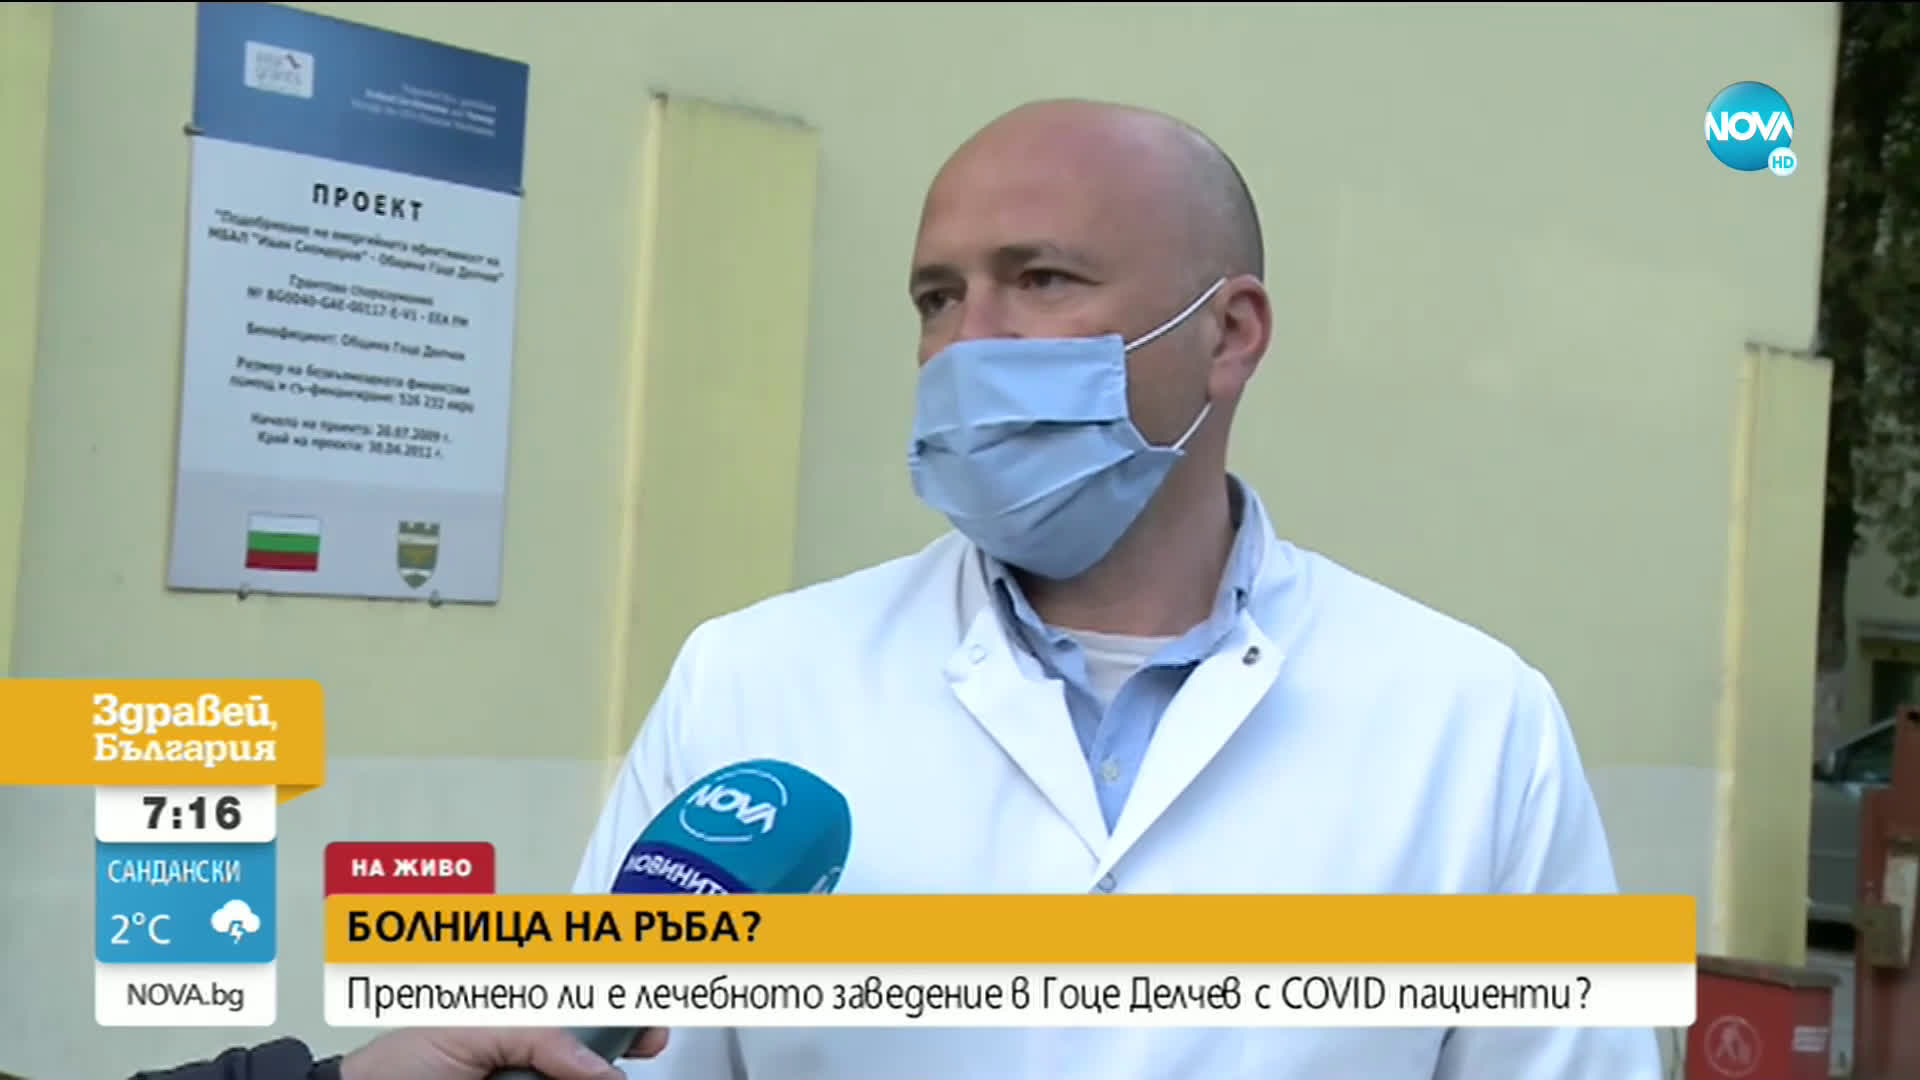 Препълнено ли е COVID отделението в болницата в Гоце Делчев?